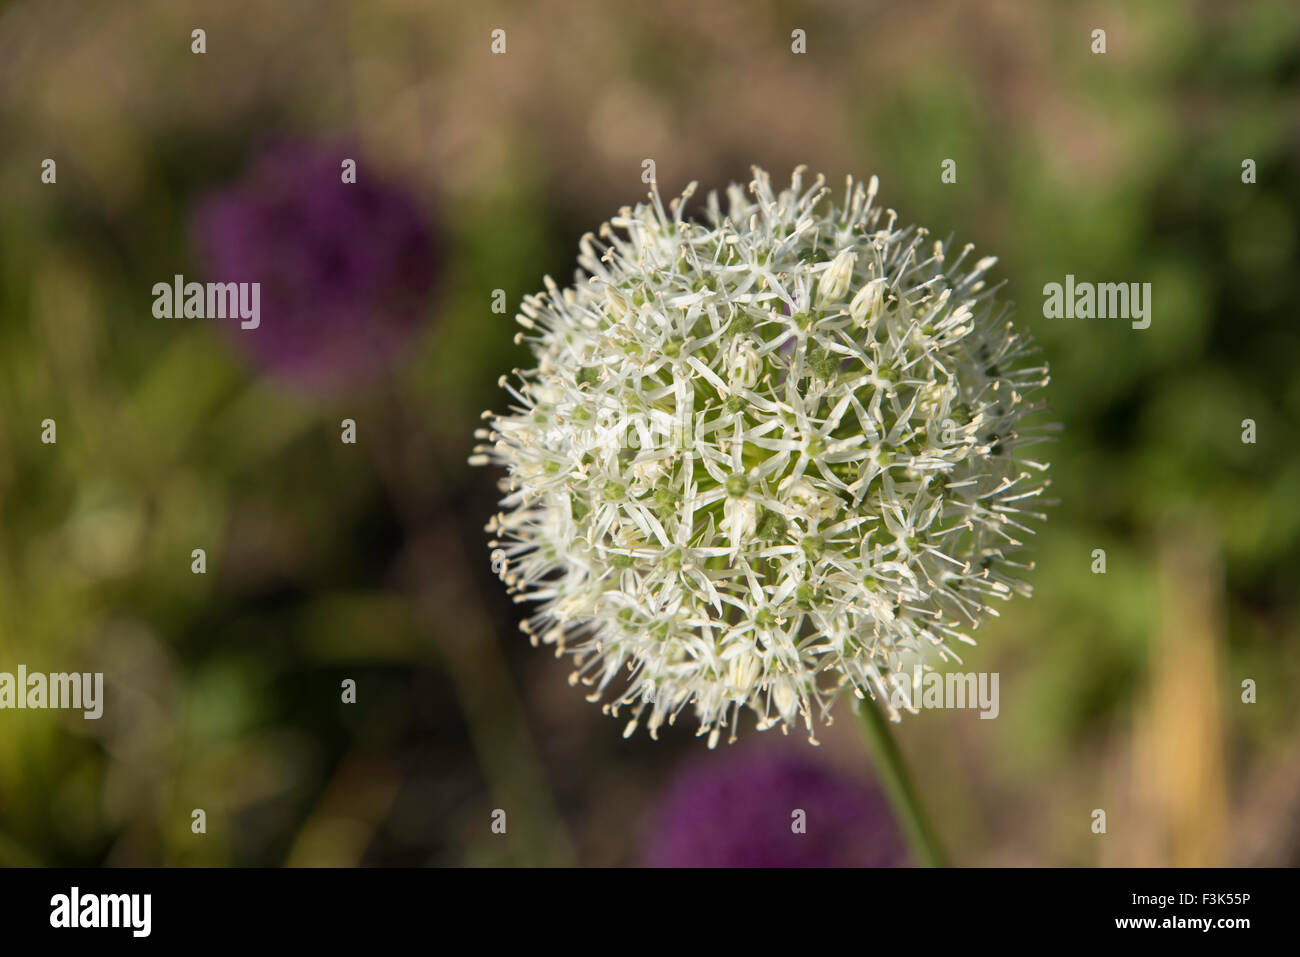 Cebolla (Allium ornamental) jardín de plantas y semillas de flores blancas con cabeza y fuera de foco el fondo de color verde y púrpura plantas Foto de stock